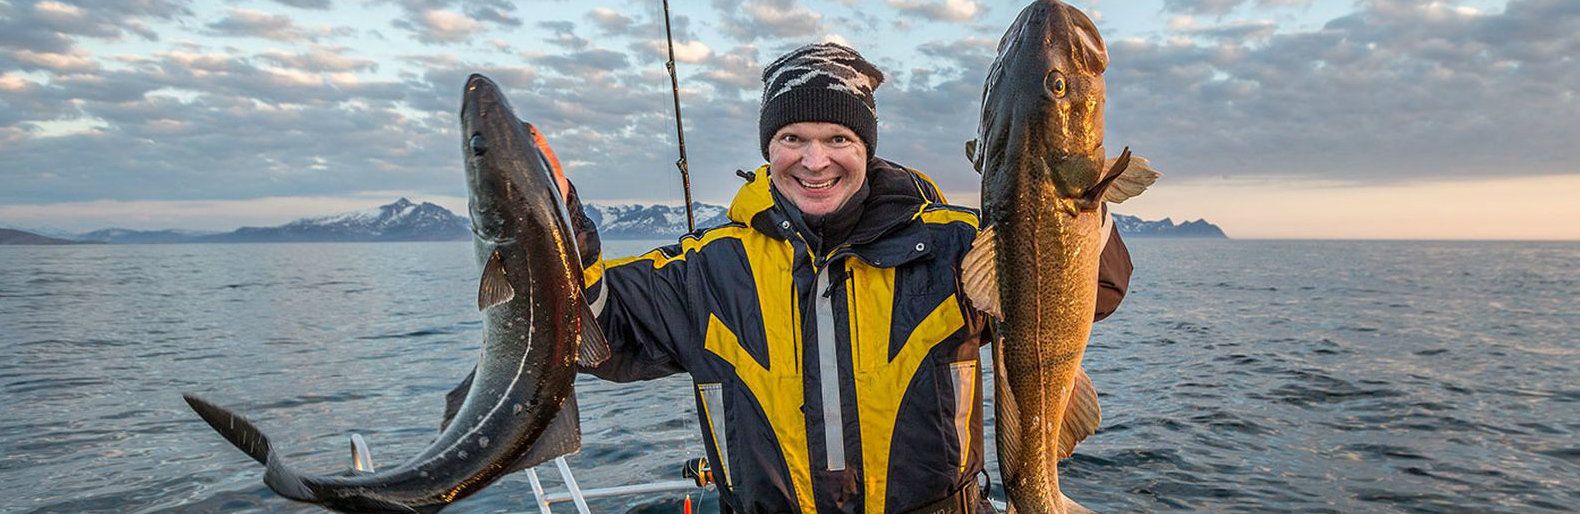 В океан! Приключения карельских рыбаков в Норвегии. Часть 5